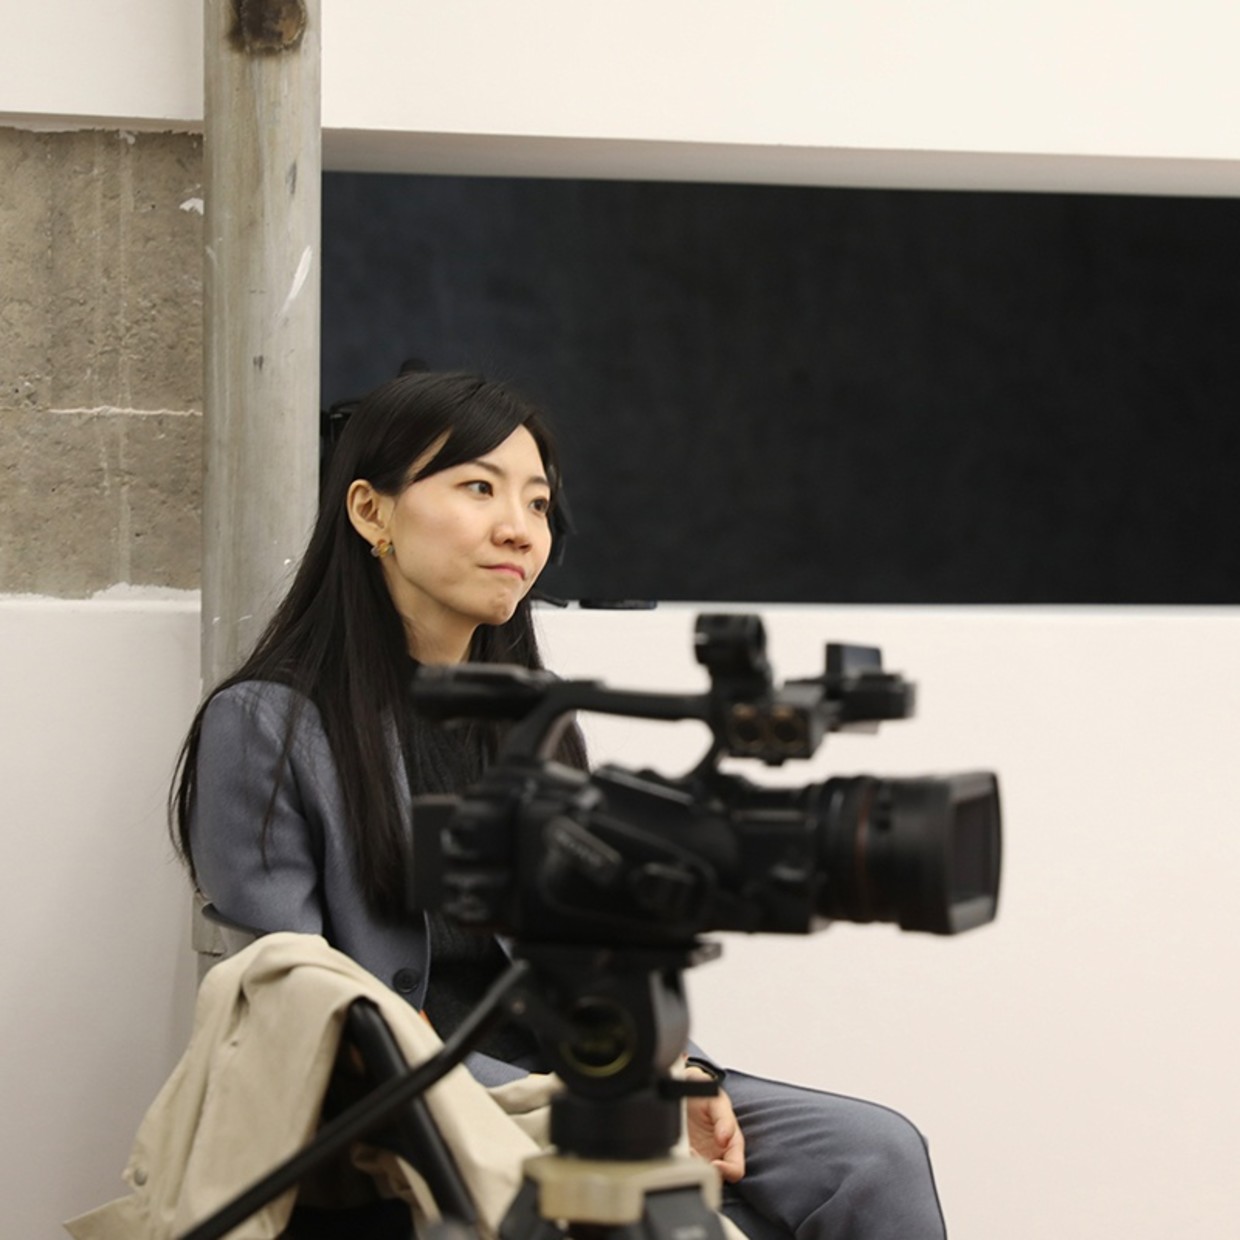 策展人：李佳 李佳是一名生活在北京的独立策展人，艺术评论写作者，译者。她曾于北京大学取得法学学士、经济学学士和艺术学硕士。 她在艺术行业有十余年工作经验，曾任泰康空间高级策展人（2015-2020），佩斯北京画廊副总监（2012-2015）等。李佳曾策划/联合策划有群展、个展二十余场，包括“故乡：海波和他的北方”（坪山美术馆，深圳，2020）、“饥饿地理”（泰康空间，北京，2019-2010）、“替代空间的替代生命”（长征空间，北京，2019）、“制性造别”（泰康空间，北京，2018）、“漂流”（现代汽车文化中心，北京，2018）等。 她于2017年获第一届Hyundai Blue Prize创意能量大奖。她是2021年亚洲文化协会(Asian Cultural Council)奖助金获得者，并将于2022年赴日完成奖助研究计划。 李佳是《艺术论坛》、 《LEAP艺术界》和《燃点》杂志等国内外艺术刊物的长期撰稿人，艺术评论亦发表《艺术论坛》、《亚太艺术杂志》、《Flash Art》、《YISHU》等国际刊物。